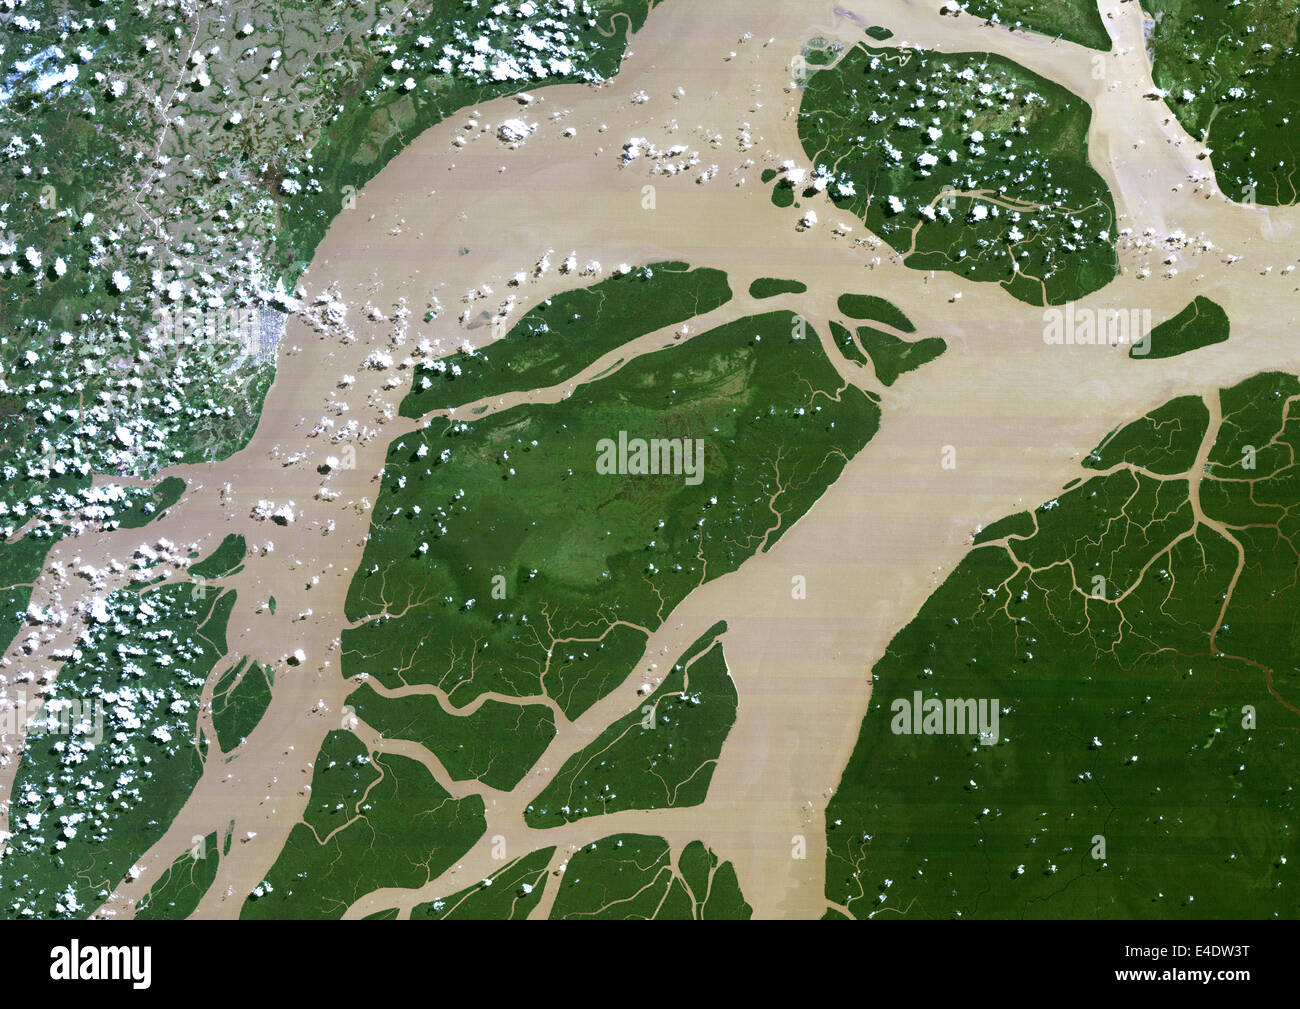 Amazon delta -Fotos und -Bildmaterial in hoher Auflösung – Alamy